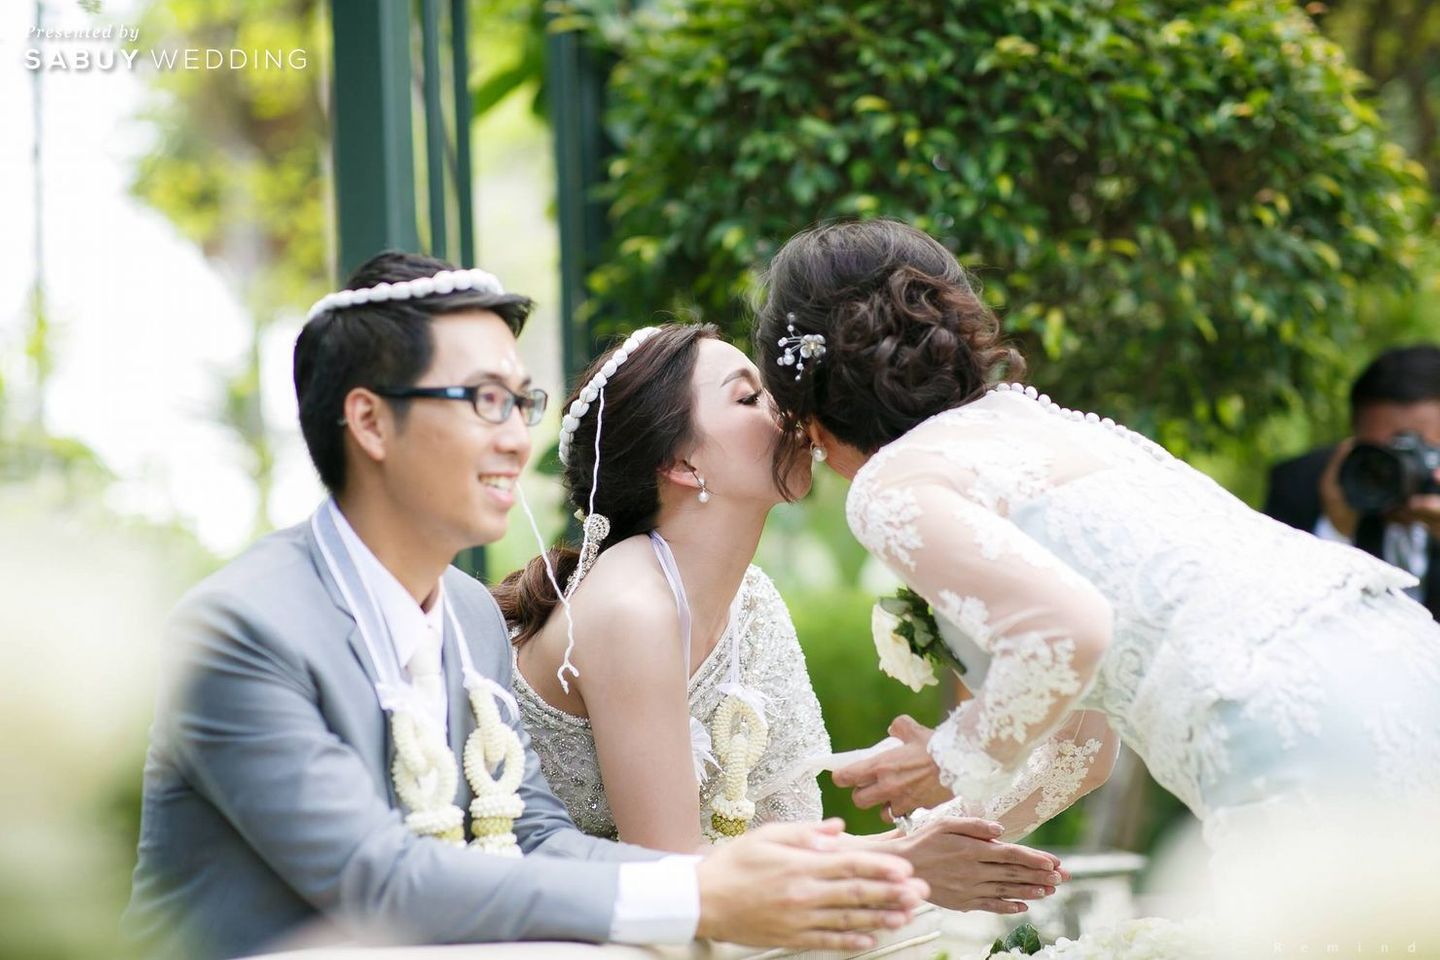 เจ้าบ่าว,งานแต่งงาน,พิธีแต่งงาน,เจ้าสาว,พิธีหมั้น รีวิวงานแต่งในสวนสวย ร่มรื่นด้วยแมกไม้ธรรมชาติ @ The Botanical House Bangkok